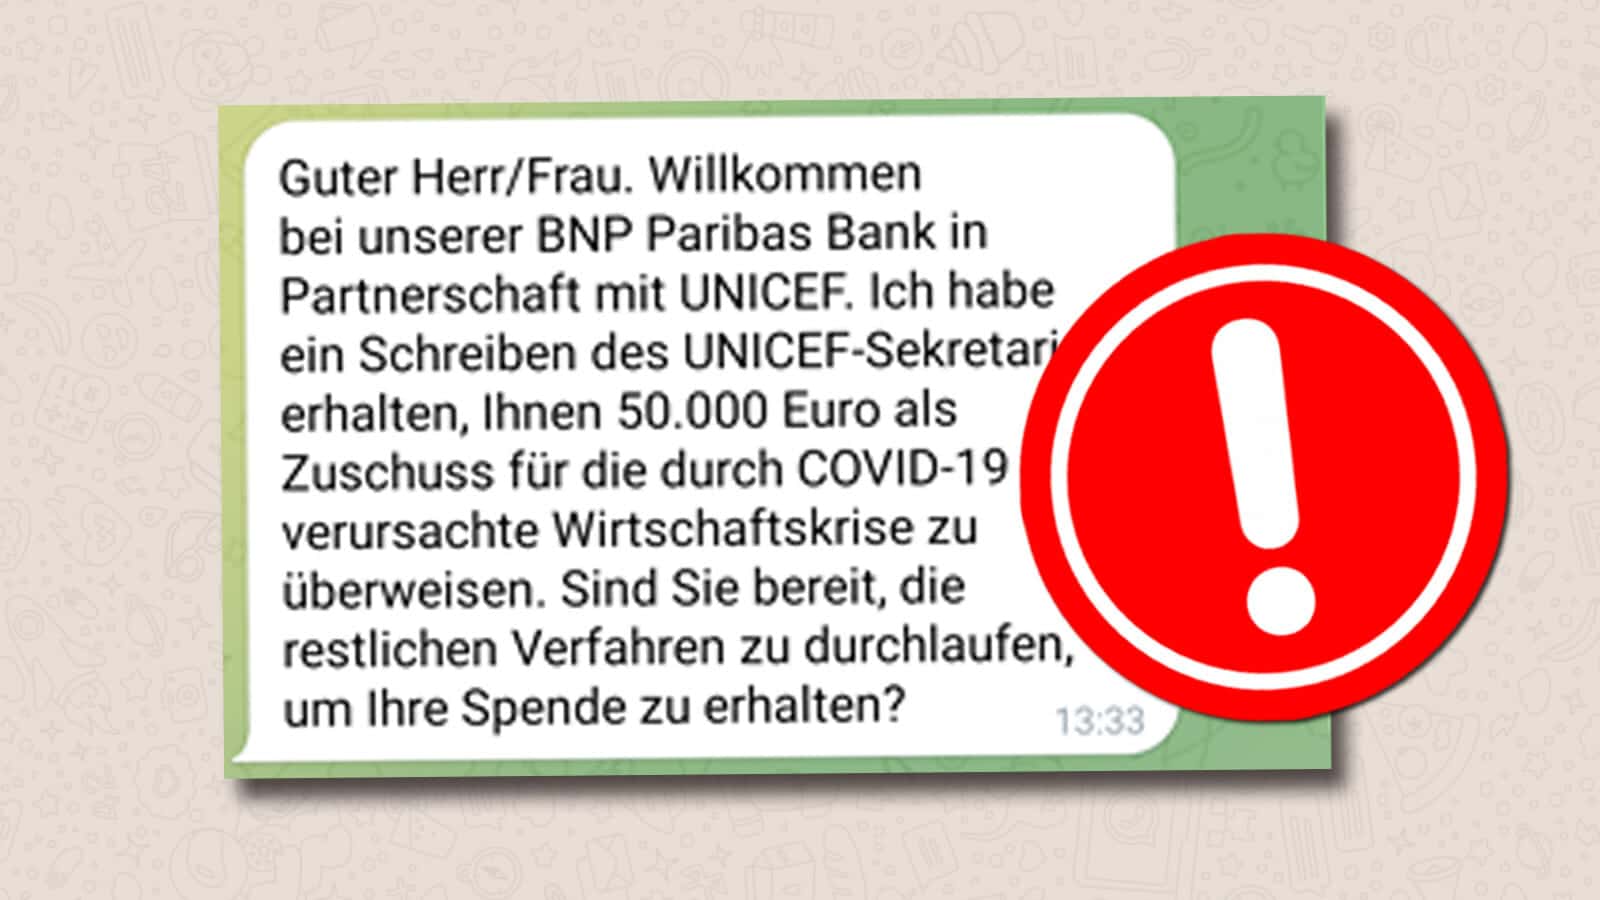 WhatsApp-Nachricht über einen COVID-19-Zuschuss von UNICEF ist Fake